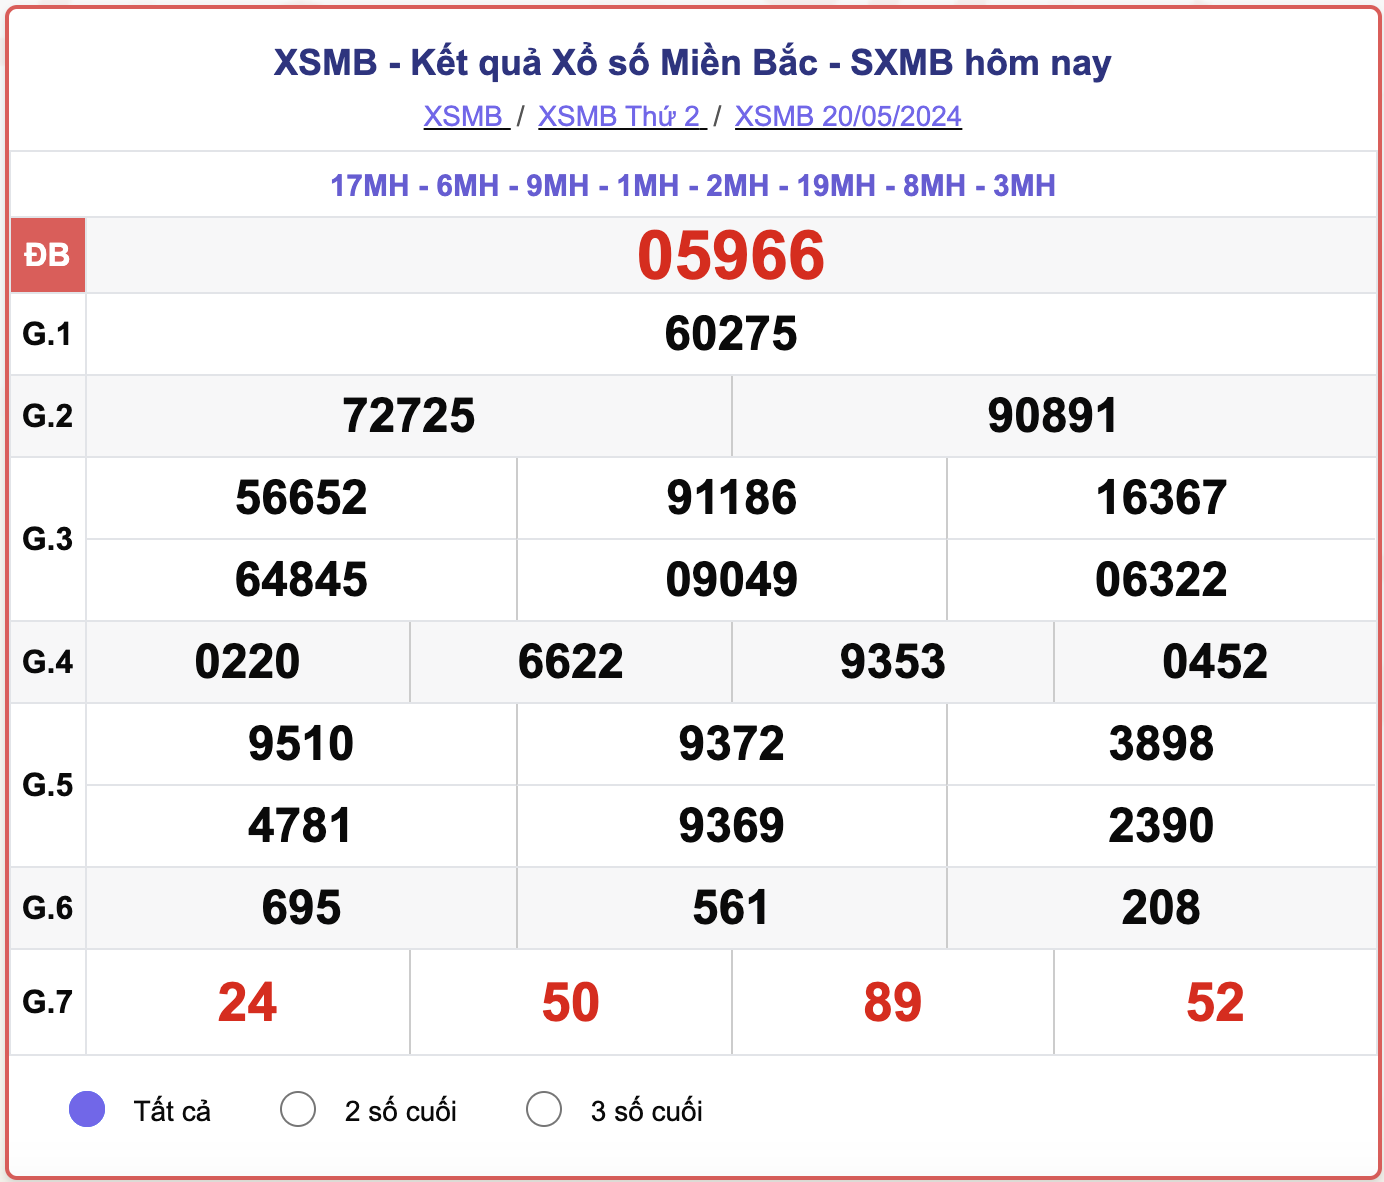 XSMB 23/5 - Kết quả xổ số miền Bắc hôm nay 23/5/2024 - KQXSMB ngày 23/5- Ảnh 4.